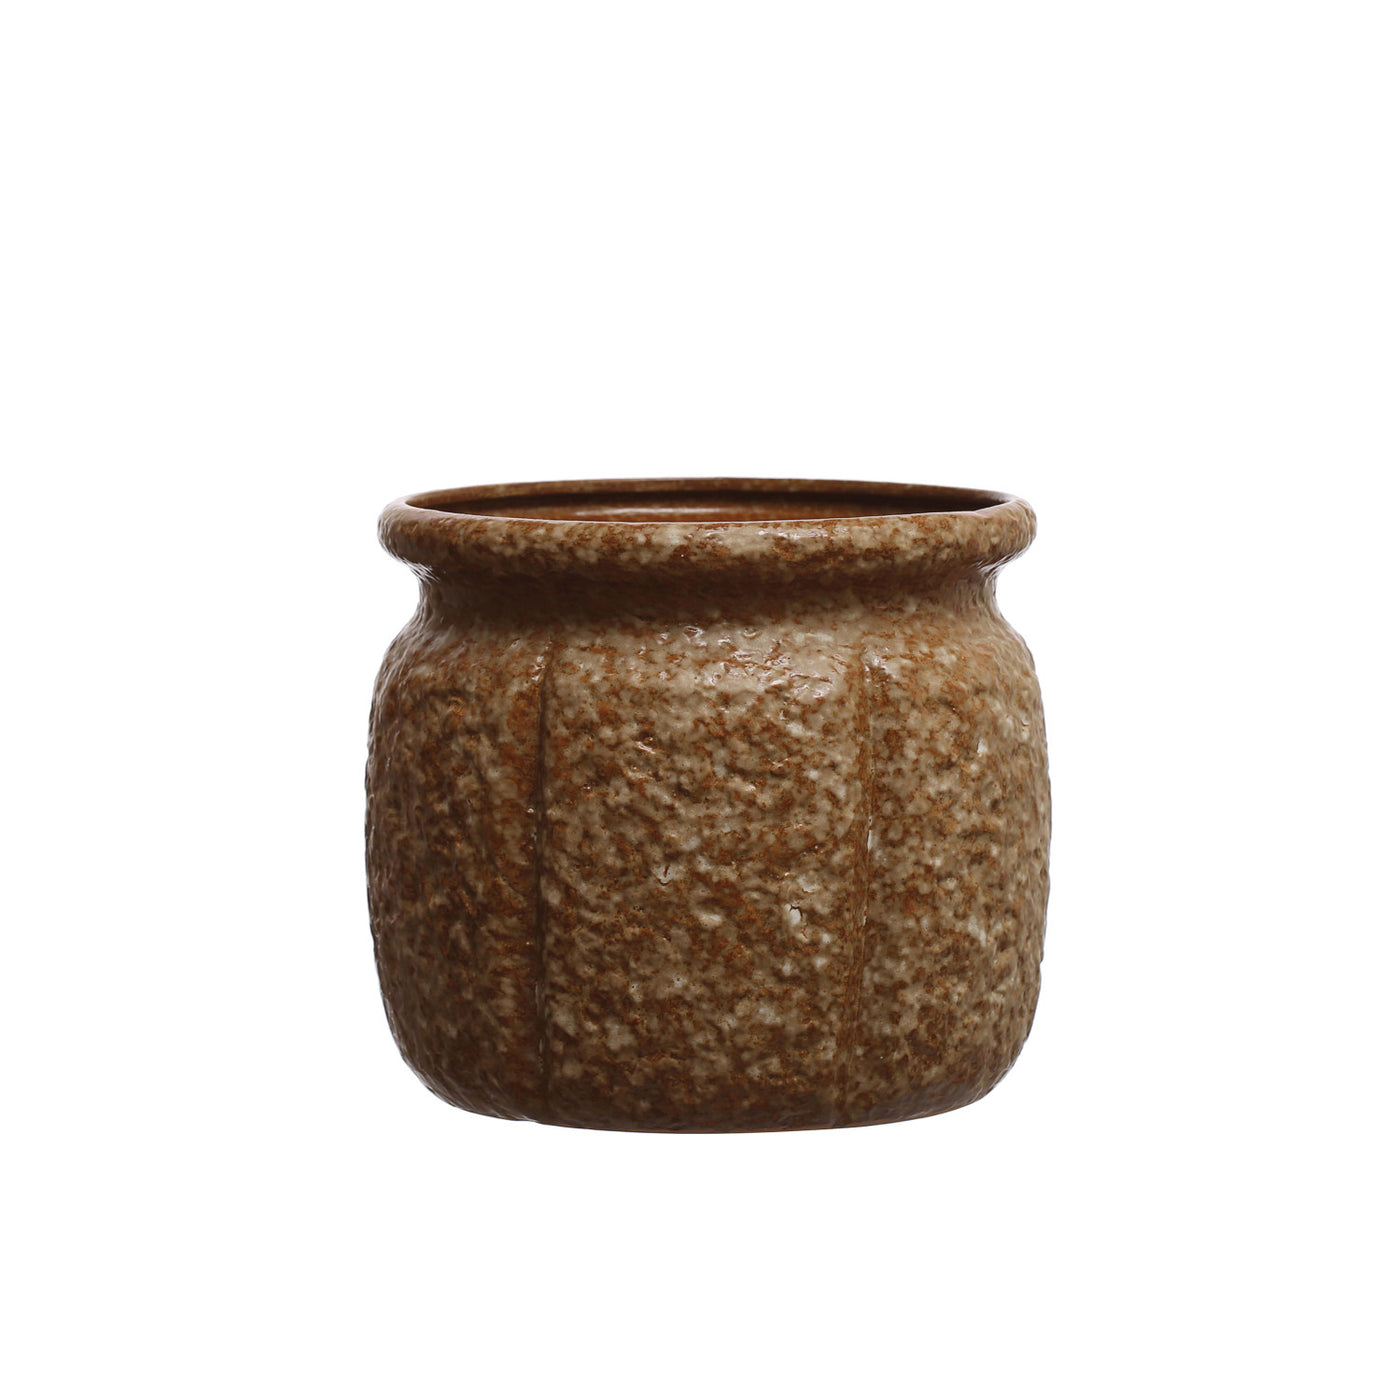 Brown Textured Stoneware Planter, 7"